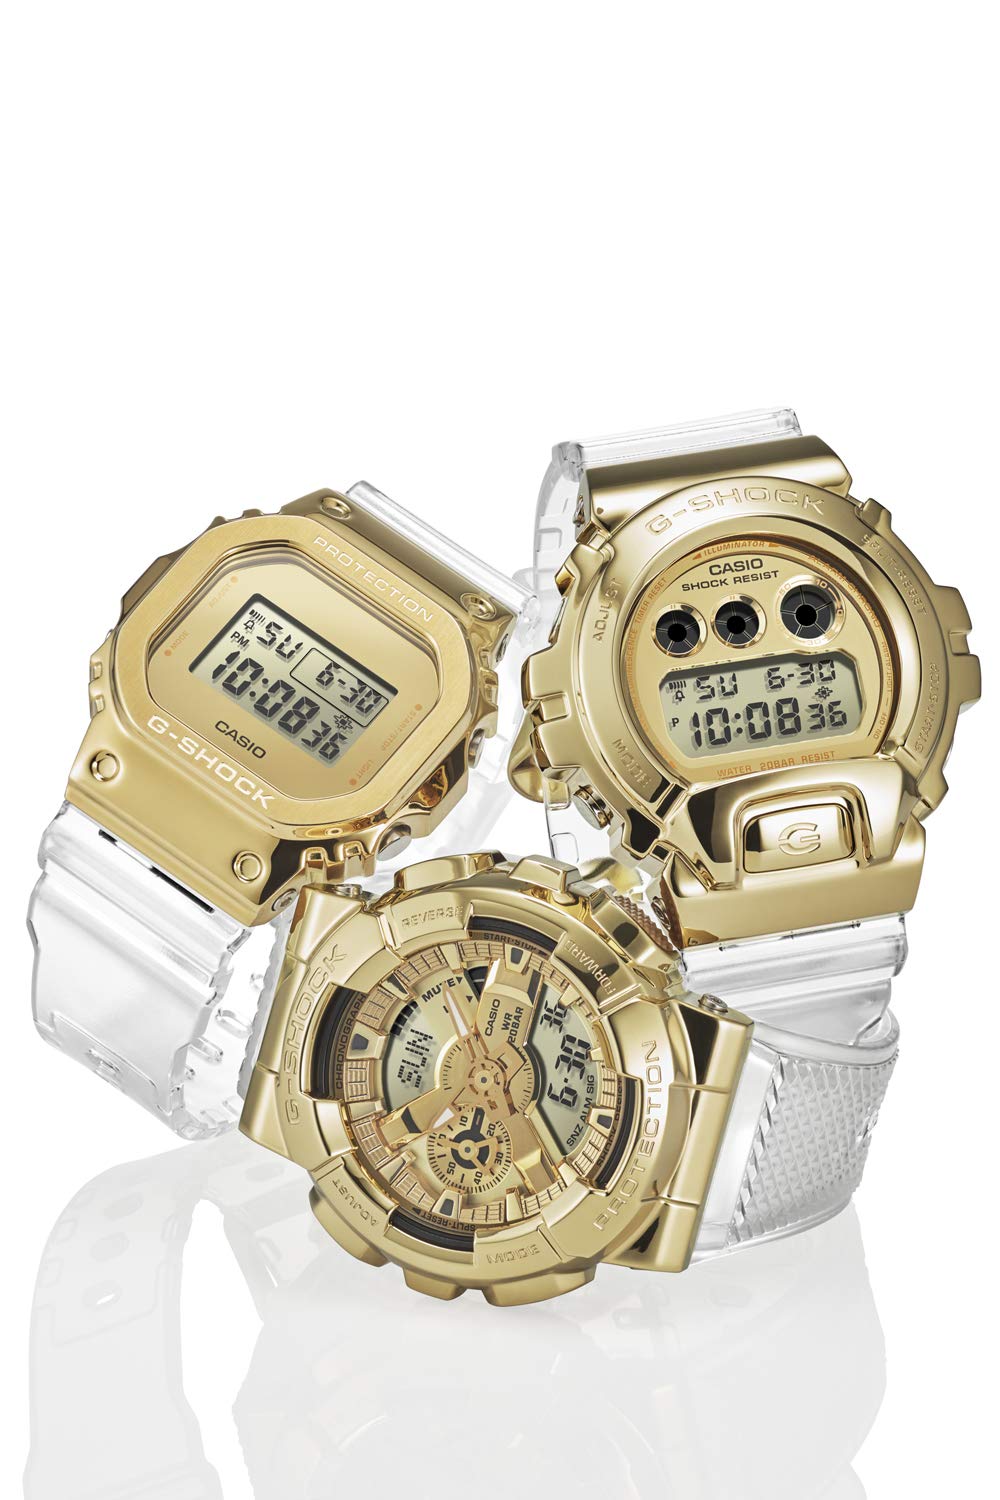 [カシオ] 腕時計 ジーショック 【国内正規品】メタルカバード GM-5600SG-9JF メンズ クリア - BanzaiHobby